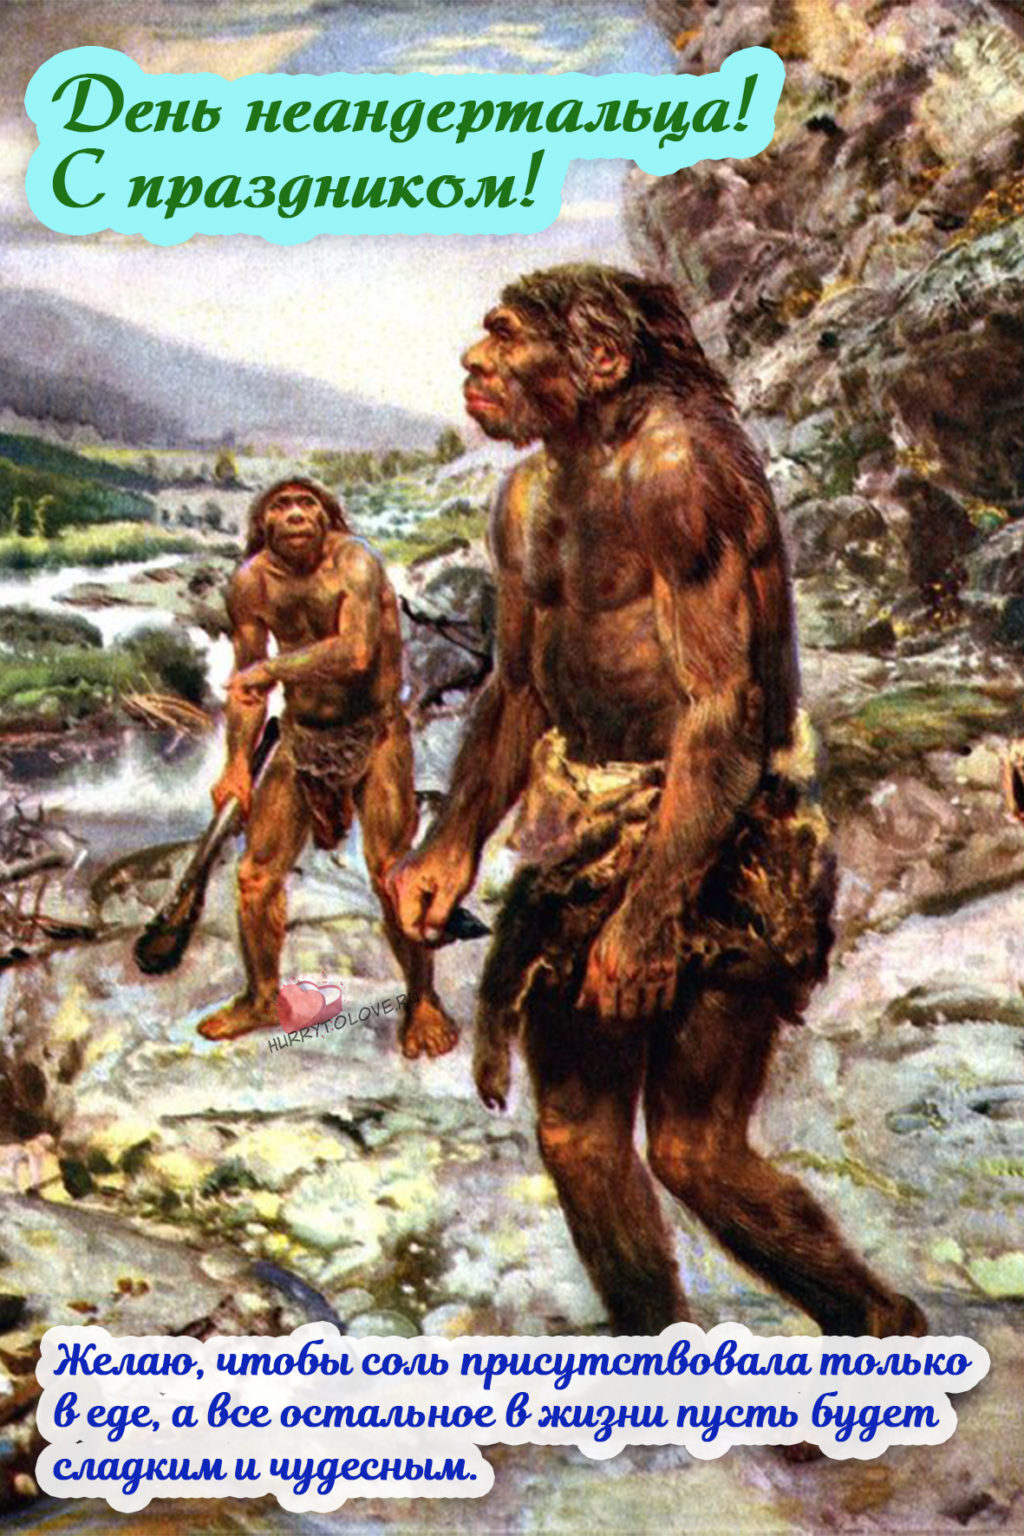 Первобытное состояние. Палеоантропы или древние люди неандертальцы. Древние люди - Палеоантропы, неандертальцы. Древние люди Палеоантропы рост.